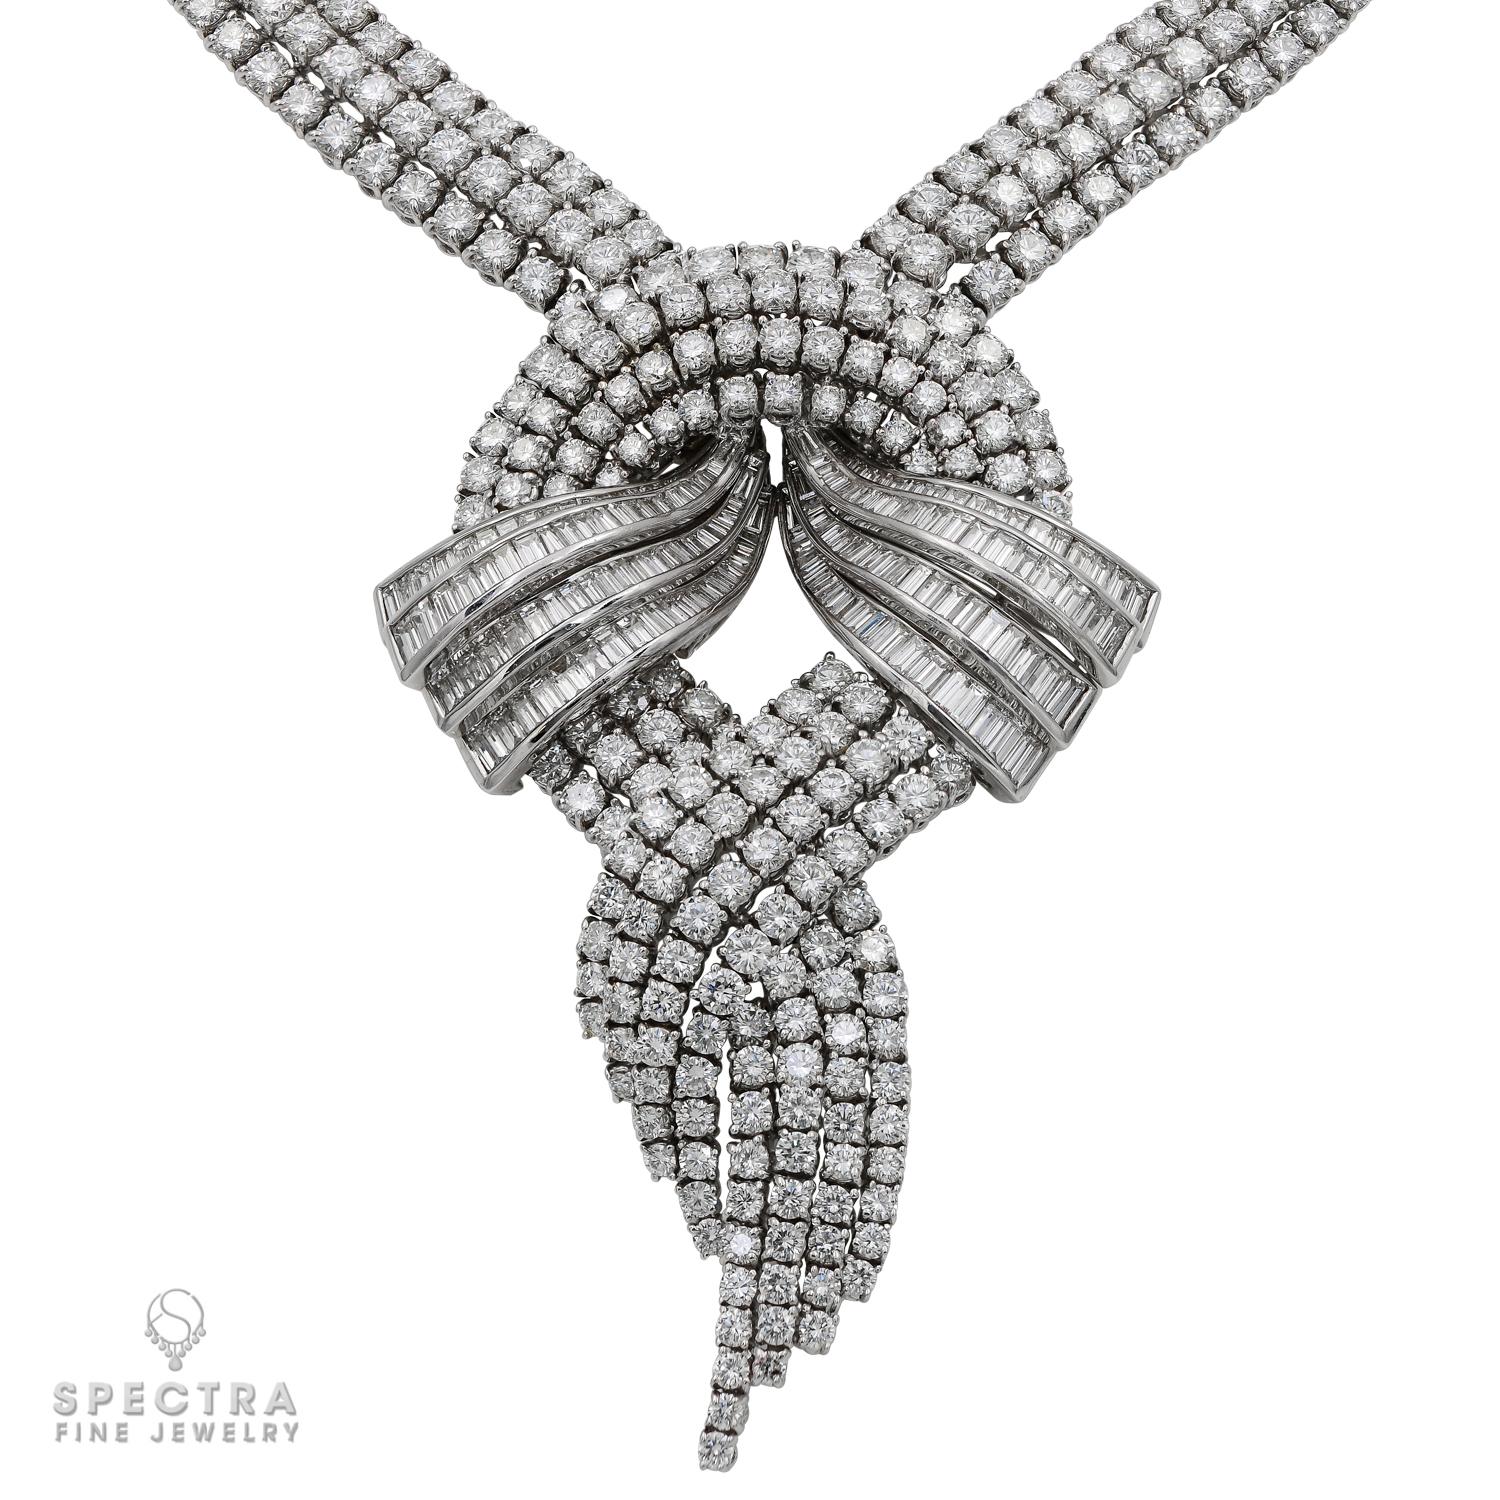 Un très beau collier composé de diamants ronds et baguettes, pesant au total 65 carats.
Les diamants sont estimés de couleur E, de pureté VVS-VS. 
La monture est en or blanc 18 carats.
Le pendentif peut être détaché, ce qui transforme le collier en